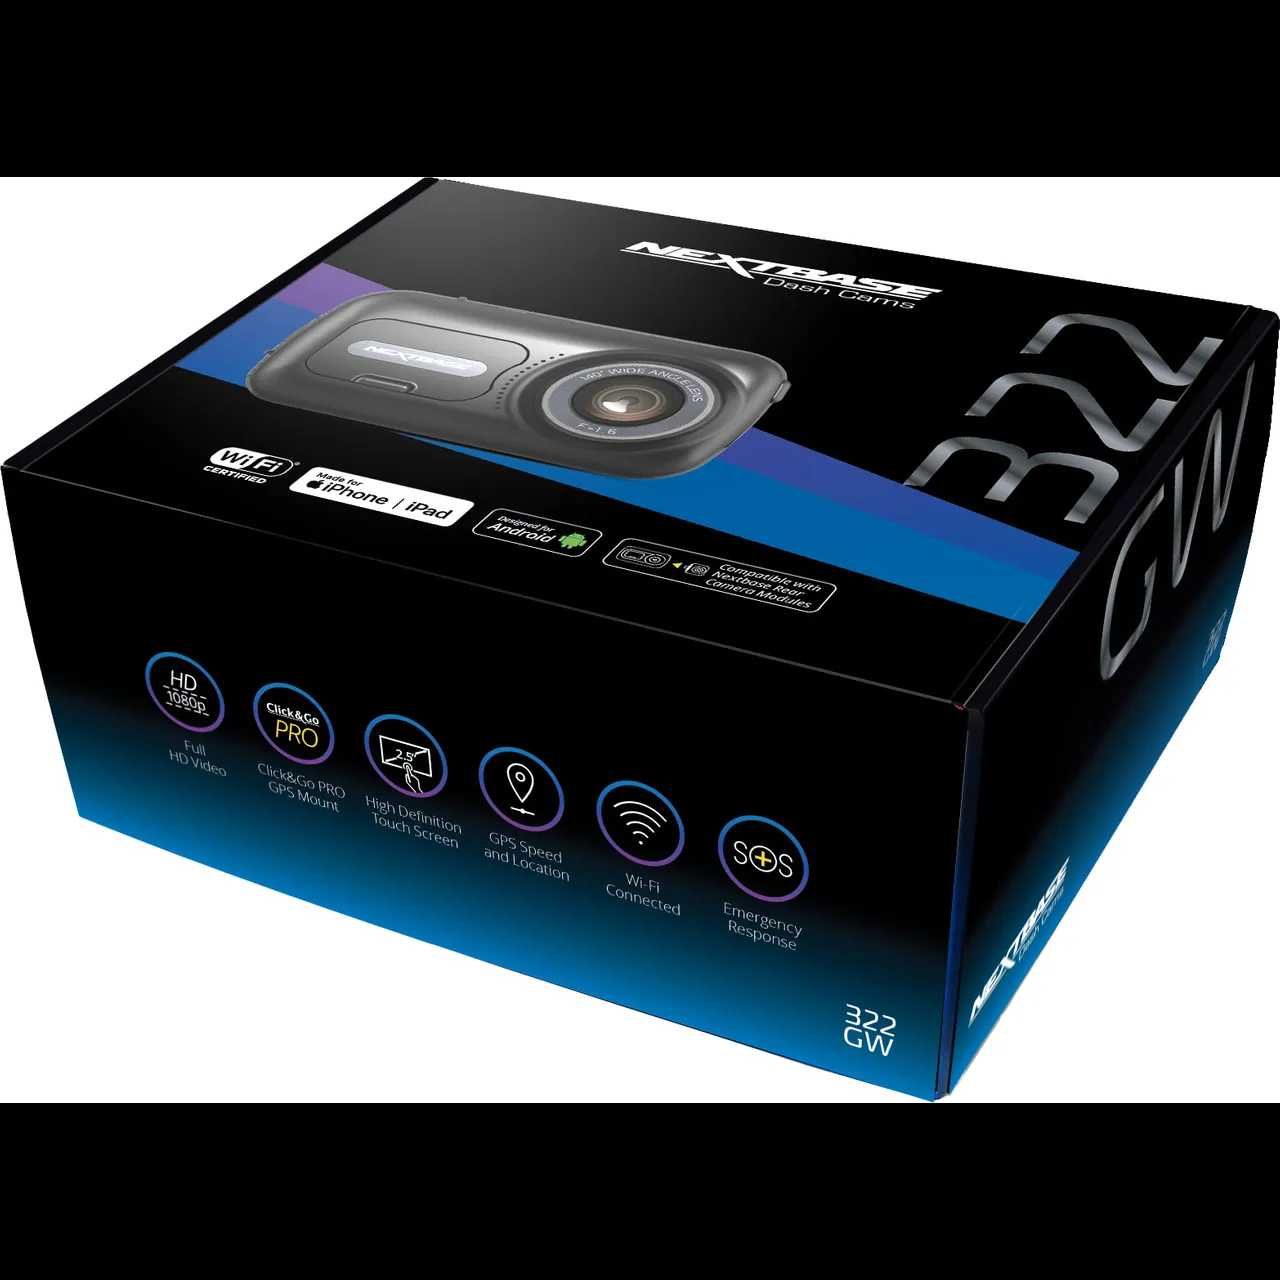 Camera Auto DVR NEXTBASE NBDVR322GW FHD 2.5" Wi-Fi G-Senzor Sigilata